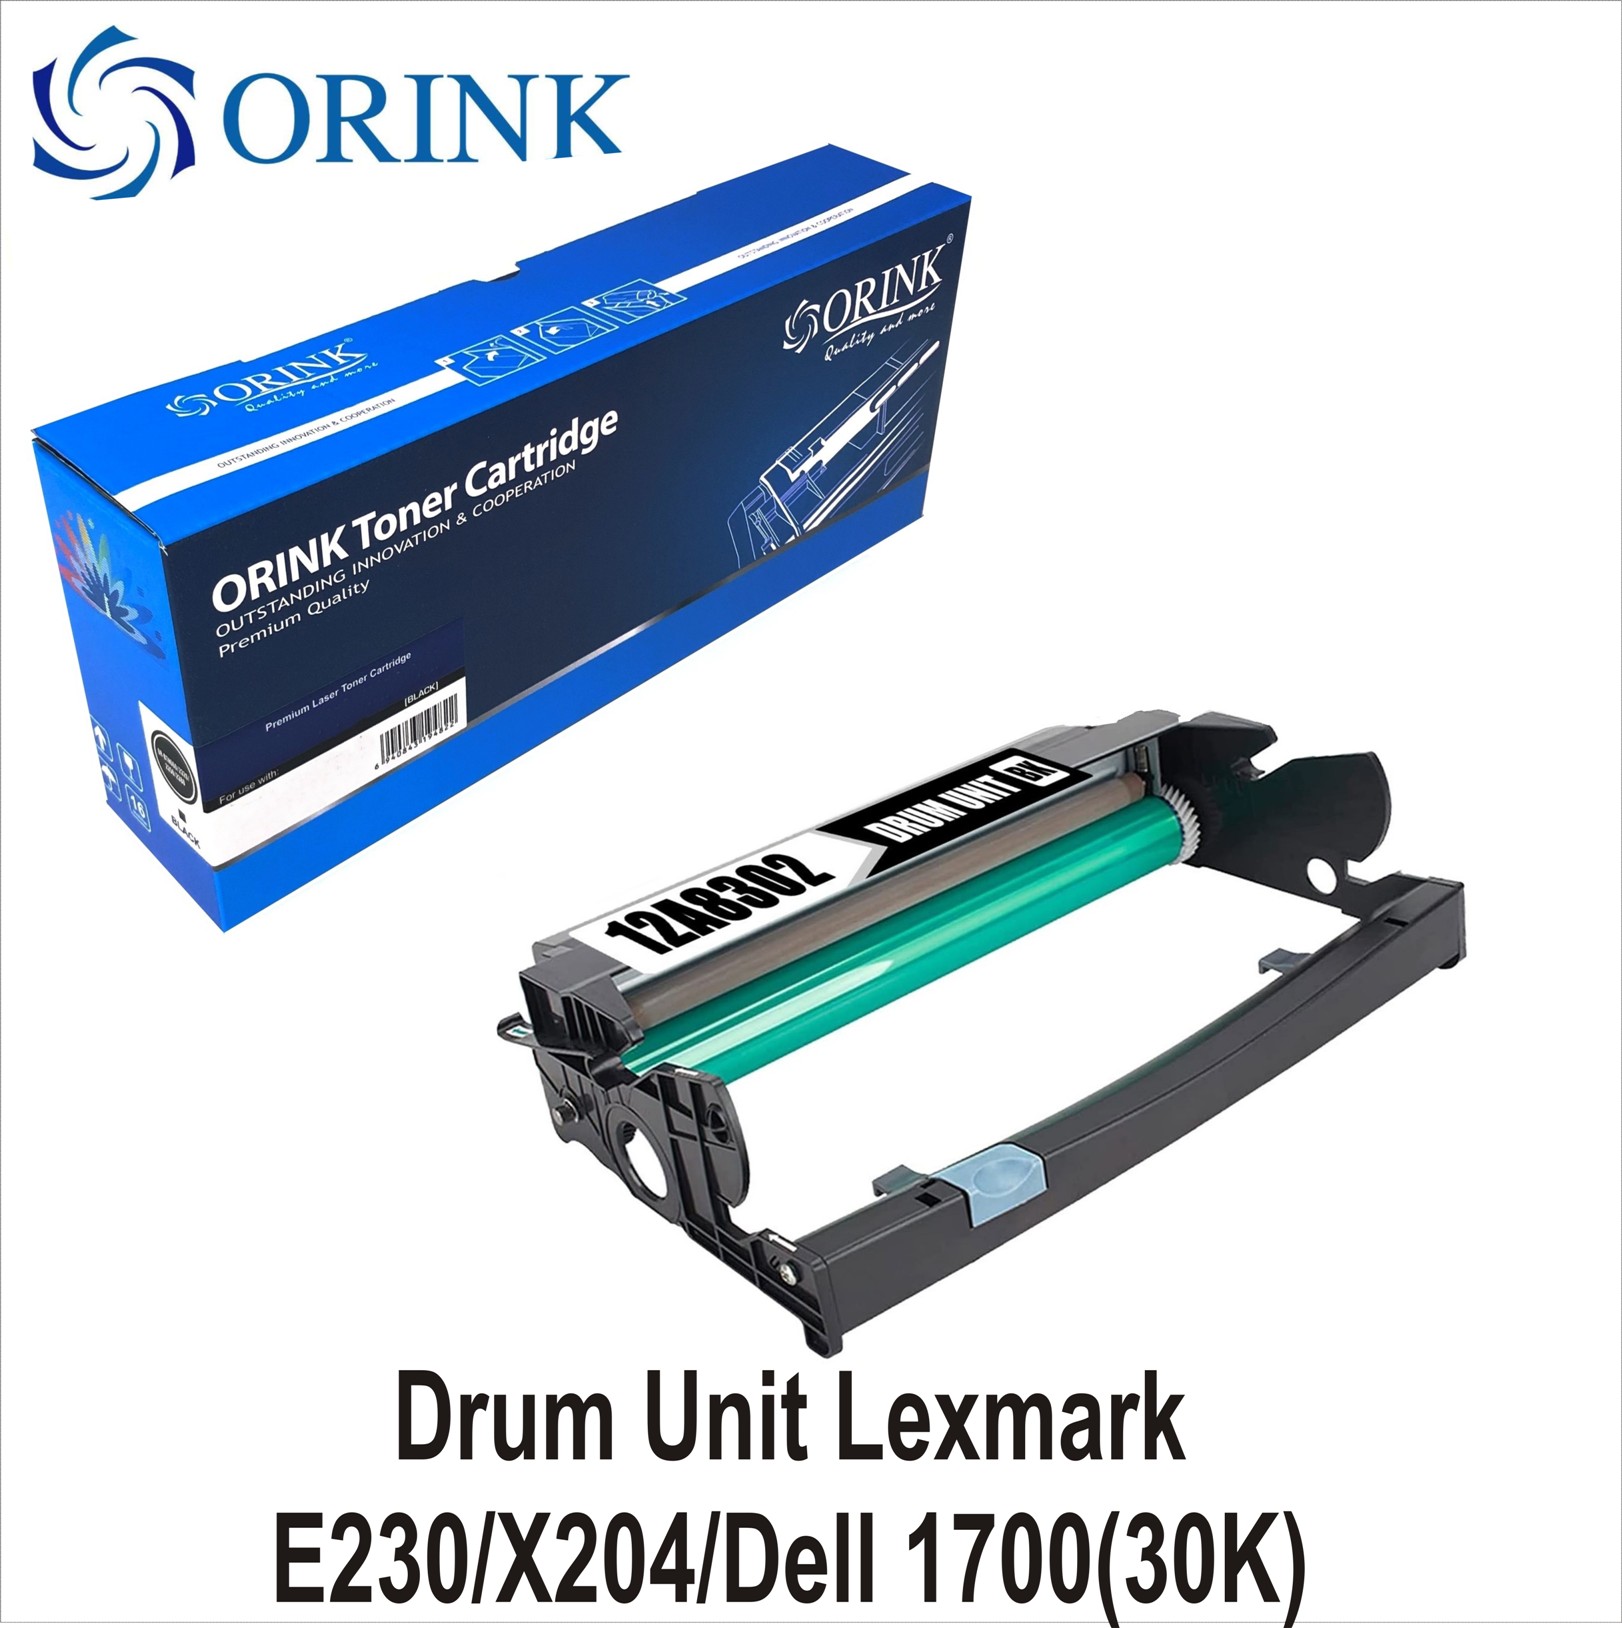 Drum Unit Lexmark E230/X204/Dell 1700(30K)ORINK